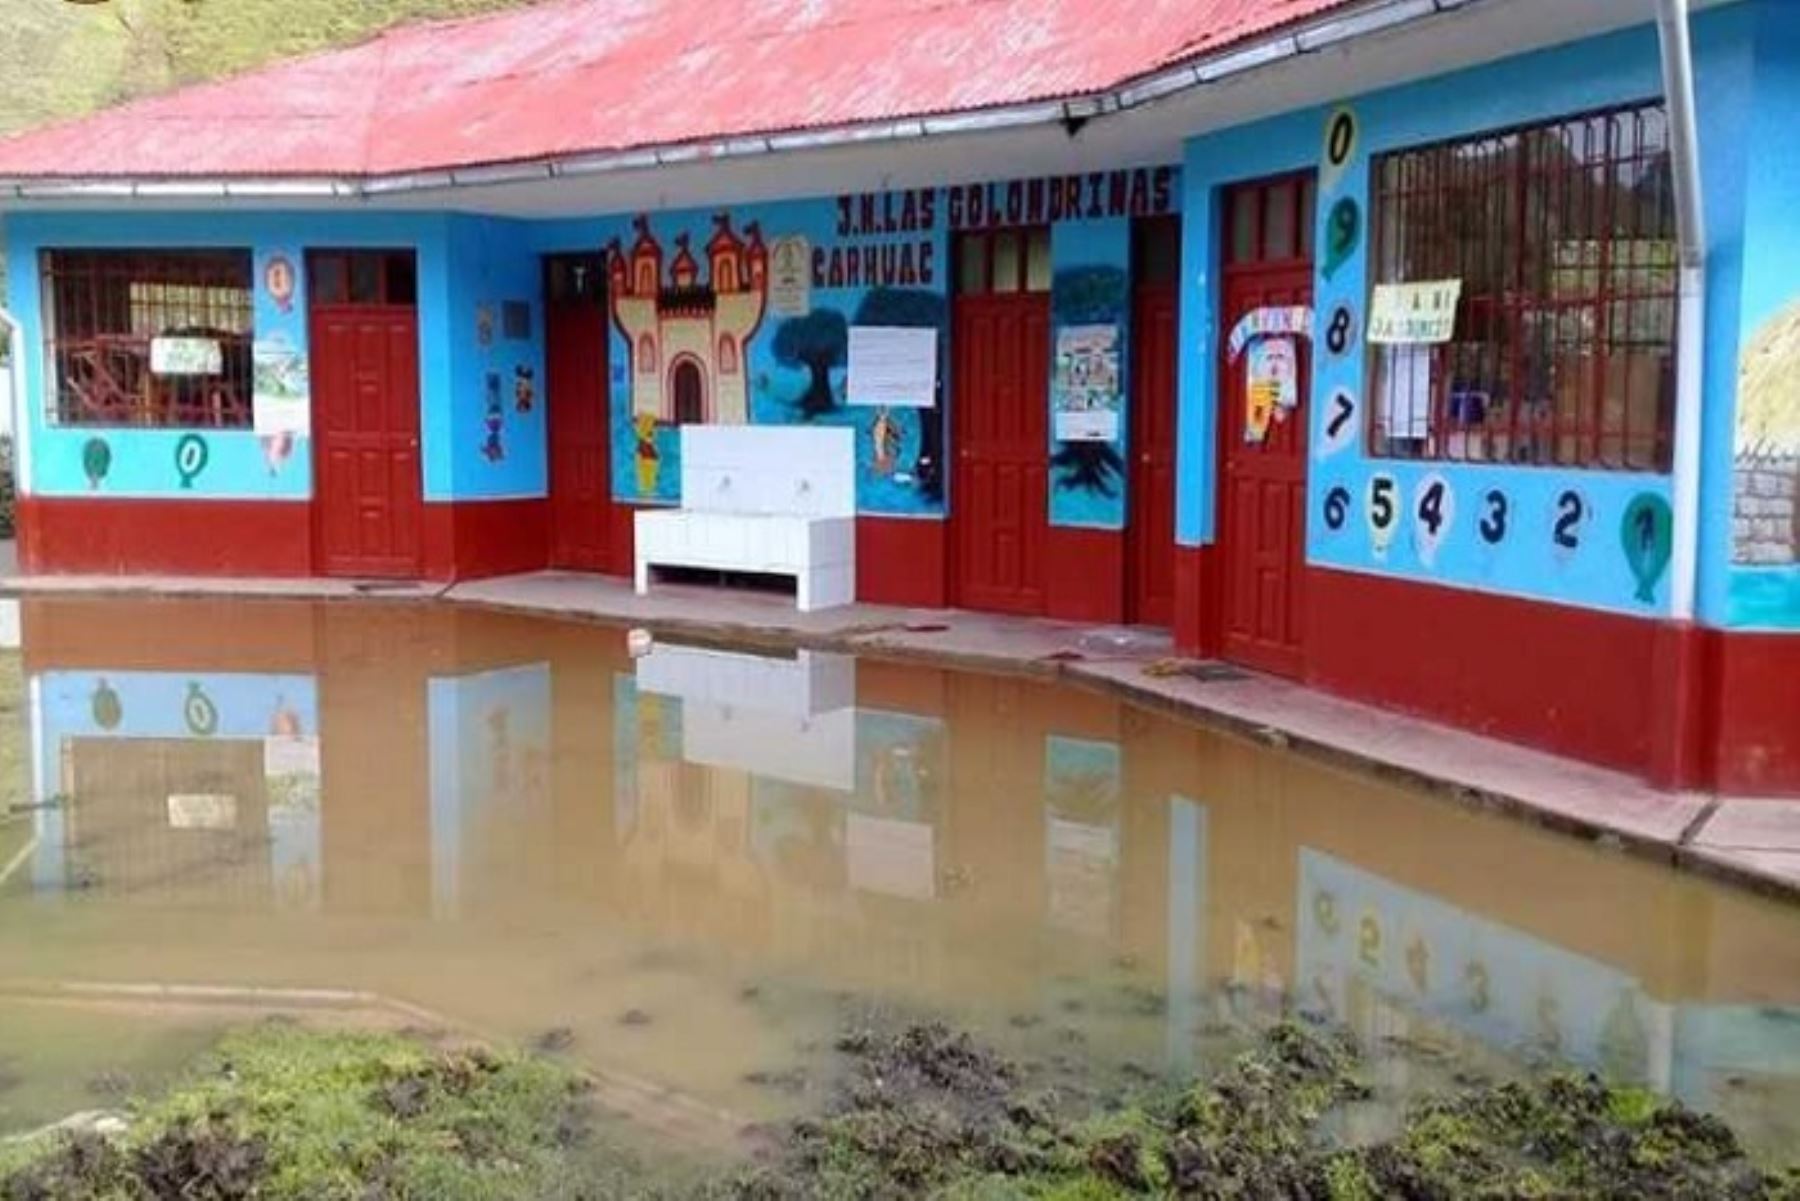 A consecuencia de las intensas lluvias que sigue soportando la provincia de Pasco, anoche se inundaron las aulas y el patio de la institución educativa EI Pasito a Pasito, en el distrito de Ninacaca, informó el Centro de Operaciones de Emergencia Regional (COER)) Pasco.